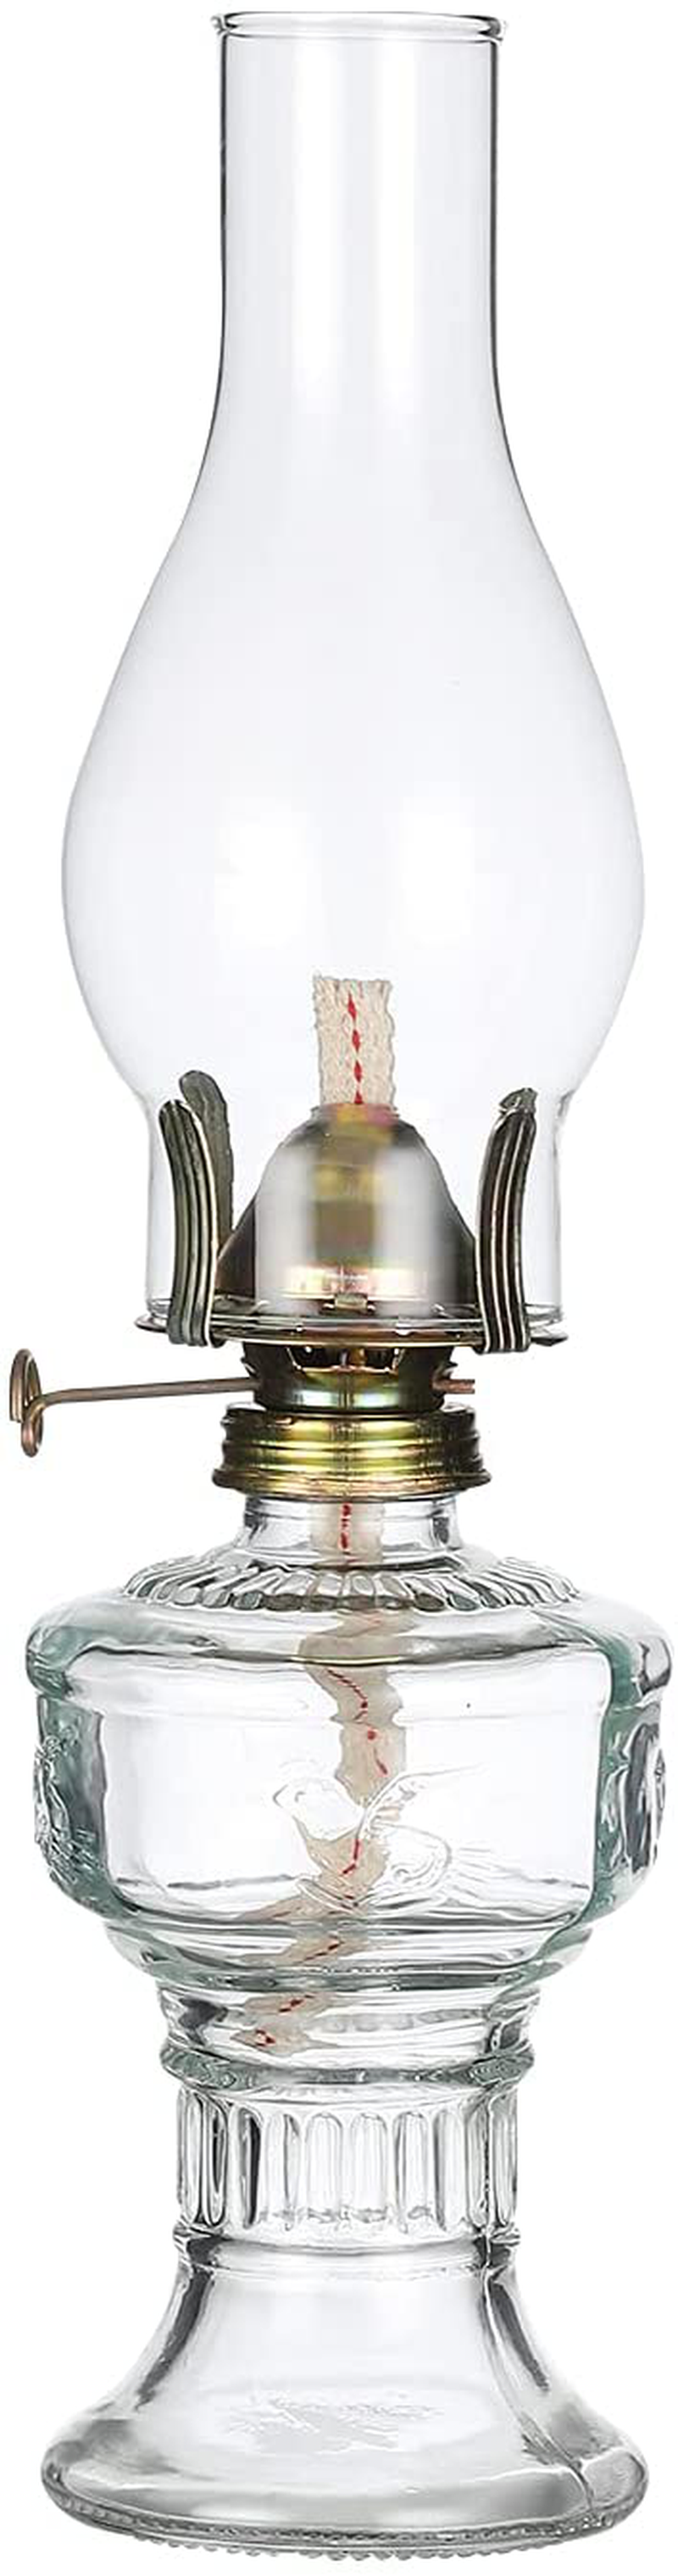 Rustic Oil Lamp Lantern Vintage Glass Kerosene Lamp 12.5''Chamber Oil Lamps for Indoor Use Home Decor Lighting Oil Lantern Home & Garden > Lighting Accessories > Oil Lamp Fuel DNRVK Medium  